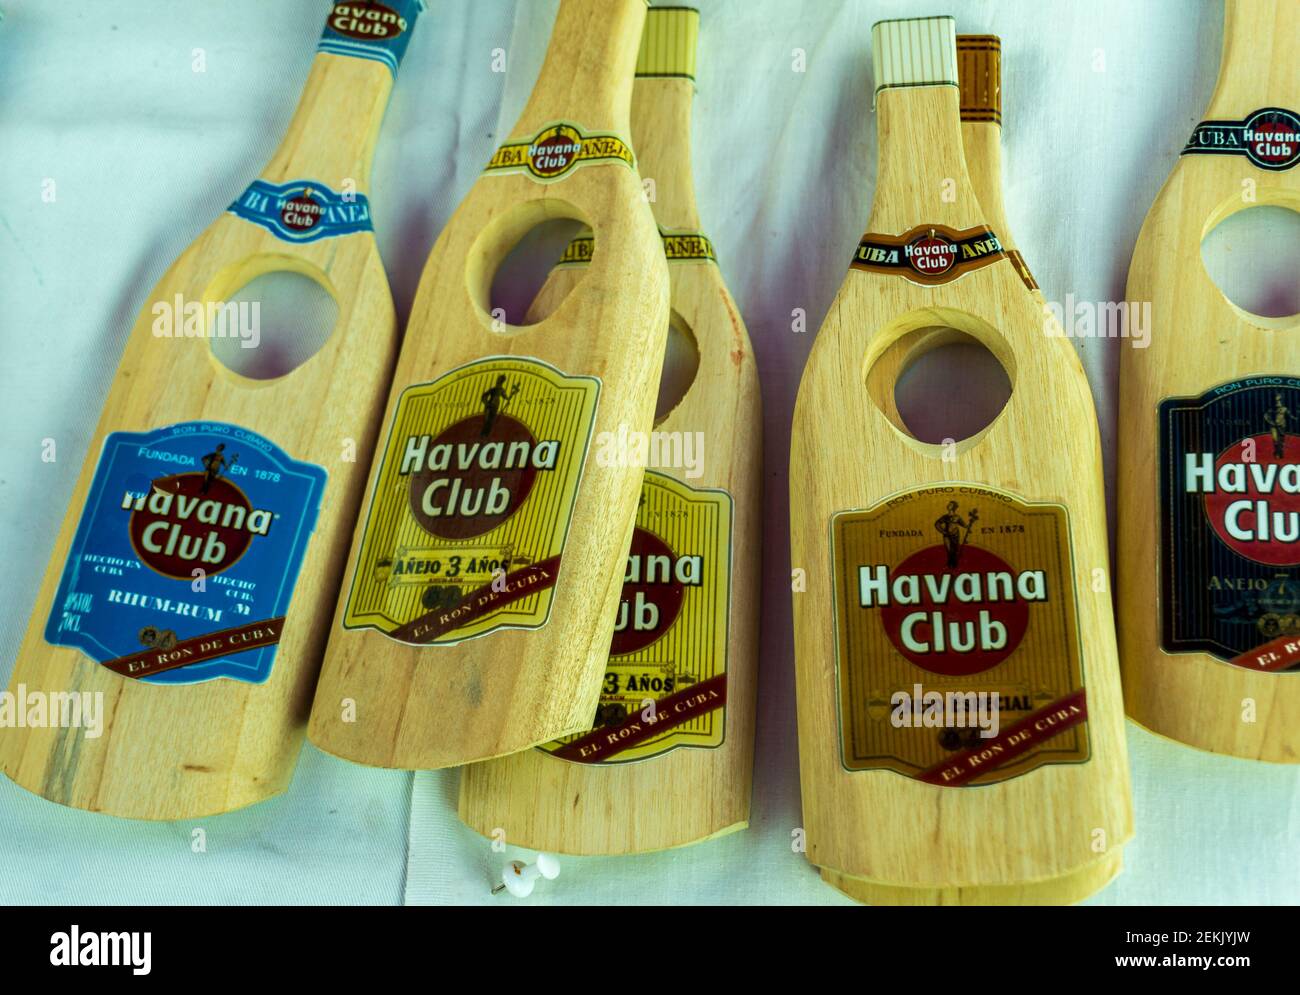 Kuba, Februar 2016 - Ausstellung von handwerklichen Holzarbeiten, die Flaschen mit alkoholischen Getränken Kubas darstellen Stockfoto